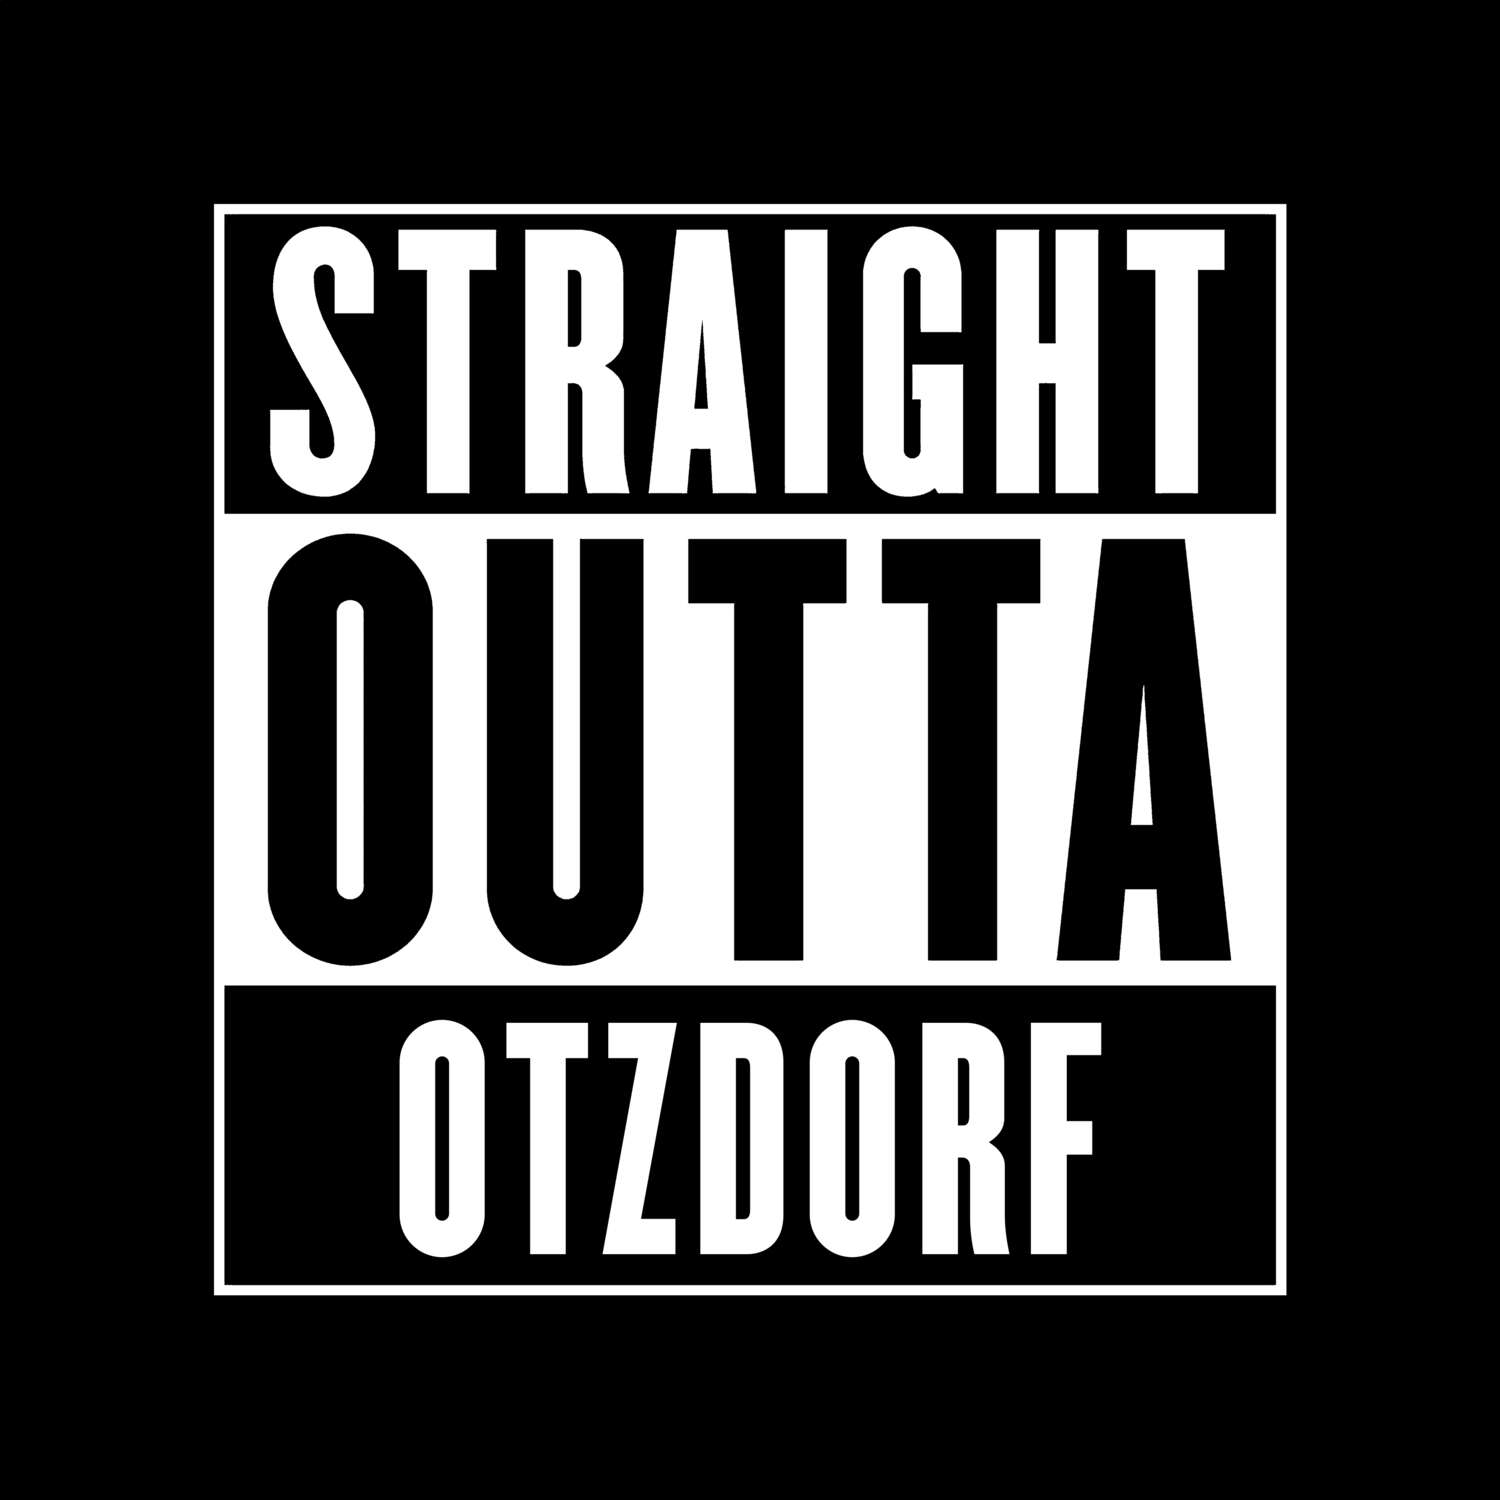 Otzdorf T-Shirt »Straight Outta«